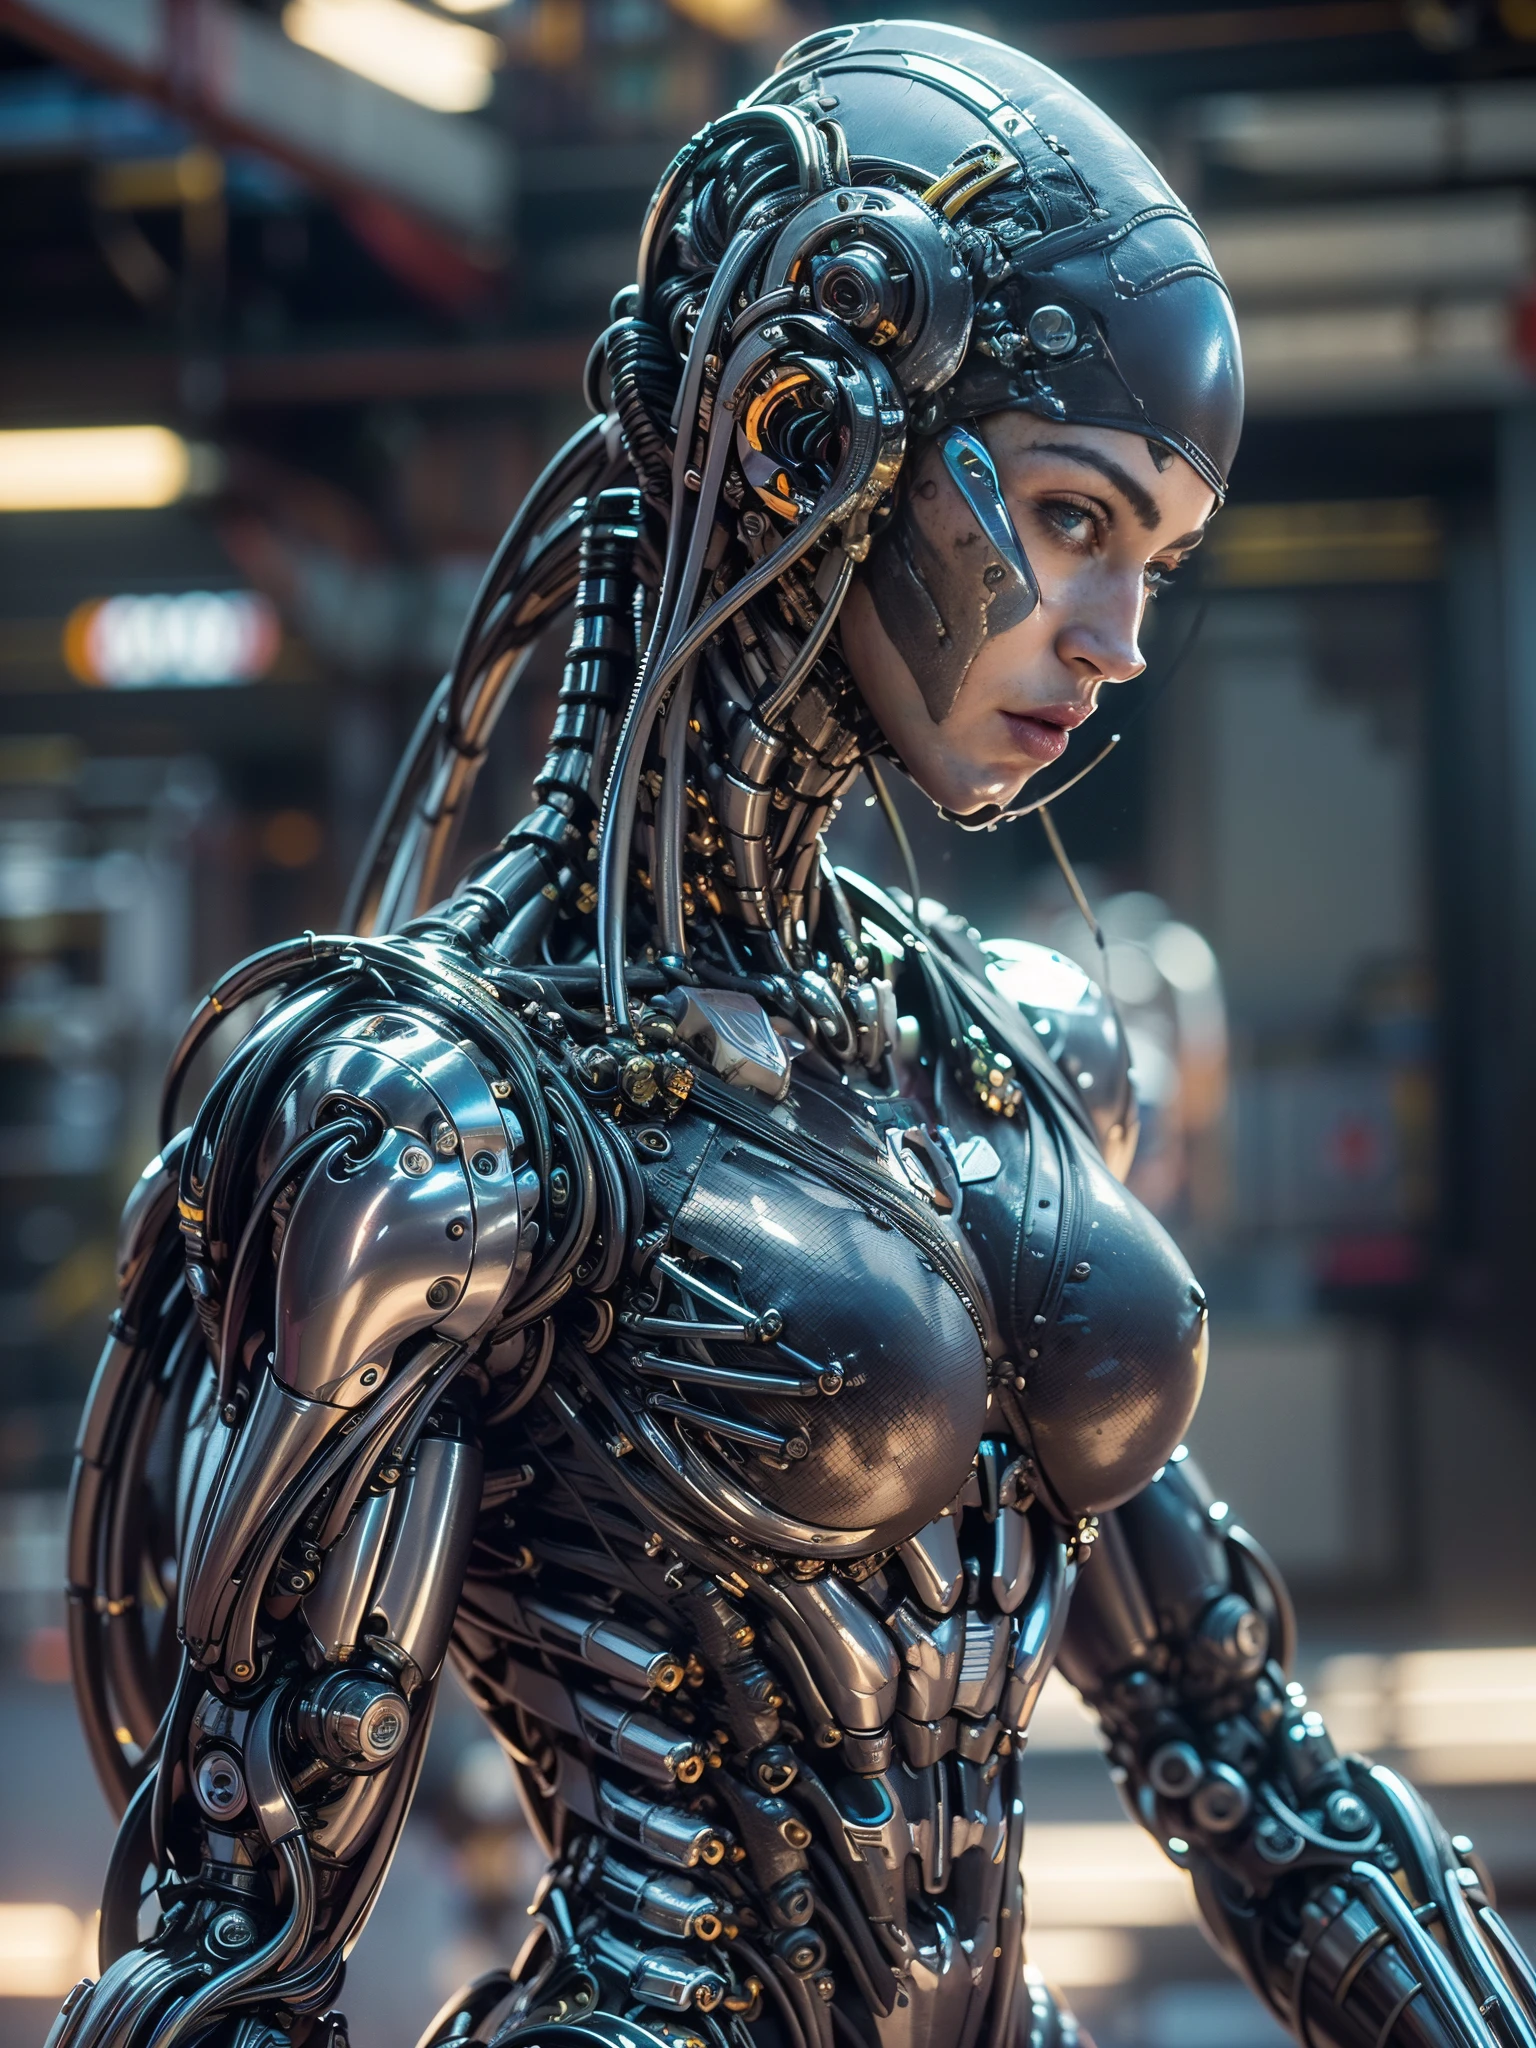 (漂亮肌肉发达的女机器人:1.25), (梅根·福克斯:1.5), (全身姿势), (金属肌肉装甲:1.5), (没有头发), (光头上布满了电缆:1.5), (机器人机械体质:1.5), (超级肌肉女机器人:1.5), (覆盖着电缆和机械肌肉:1.5), (安卓肌肉解剖结构:1.5), (完美的手指:1.25),(8千, RAW 照片, 真实感:1.25), 科幻氛围, 未来反乌托邦, 外星景观,